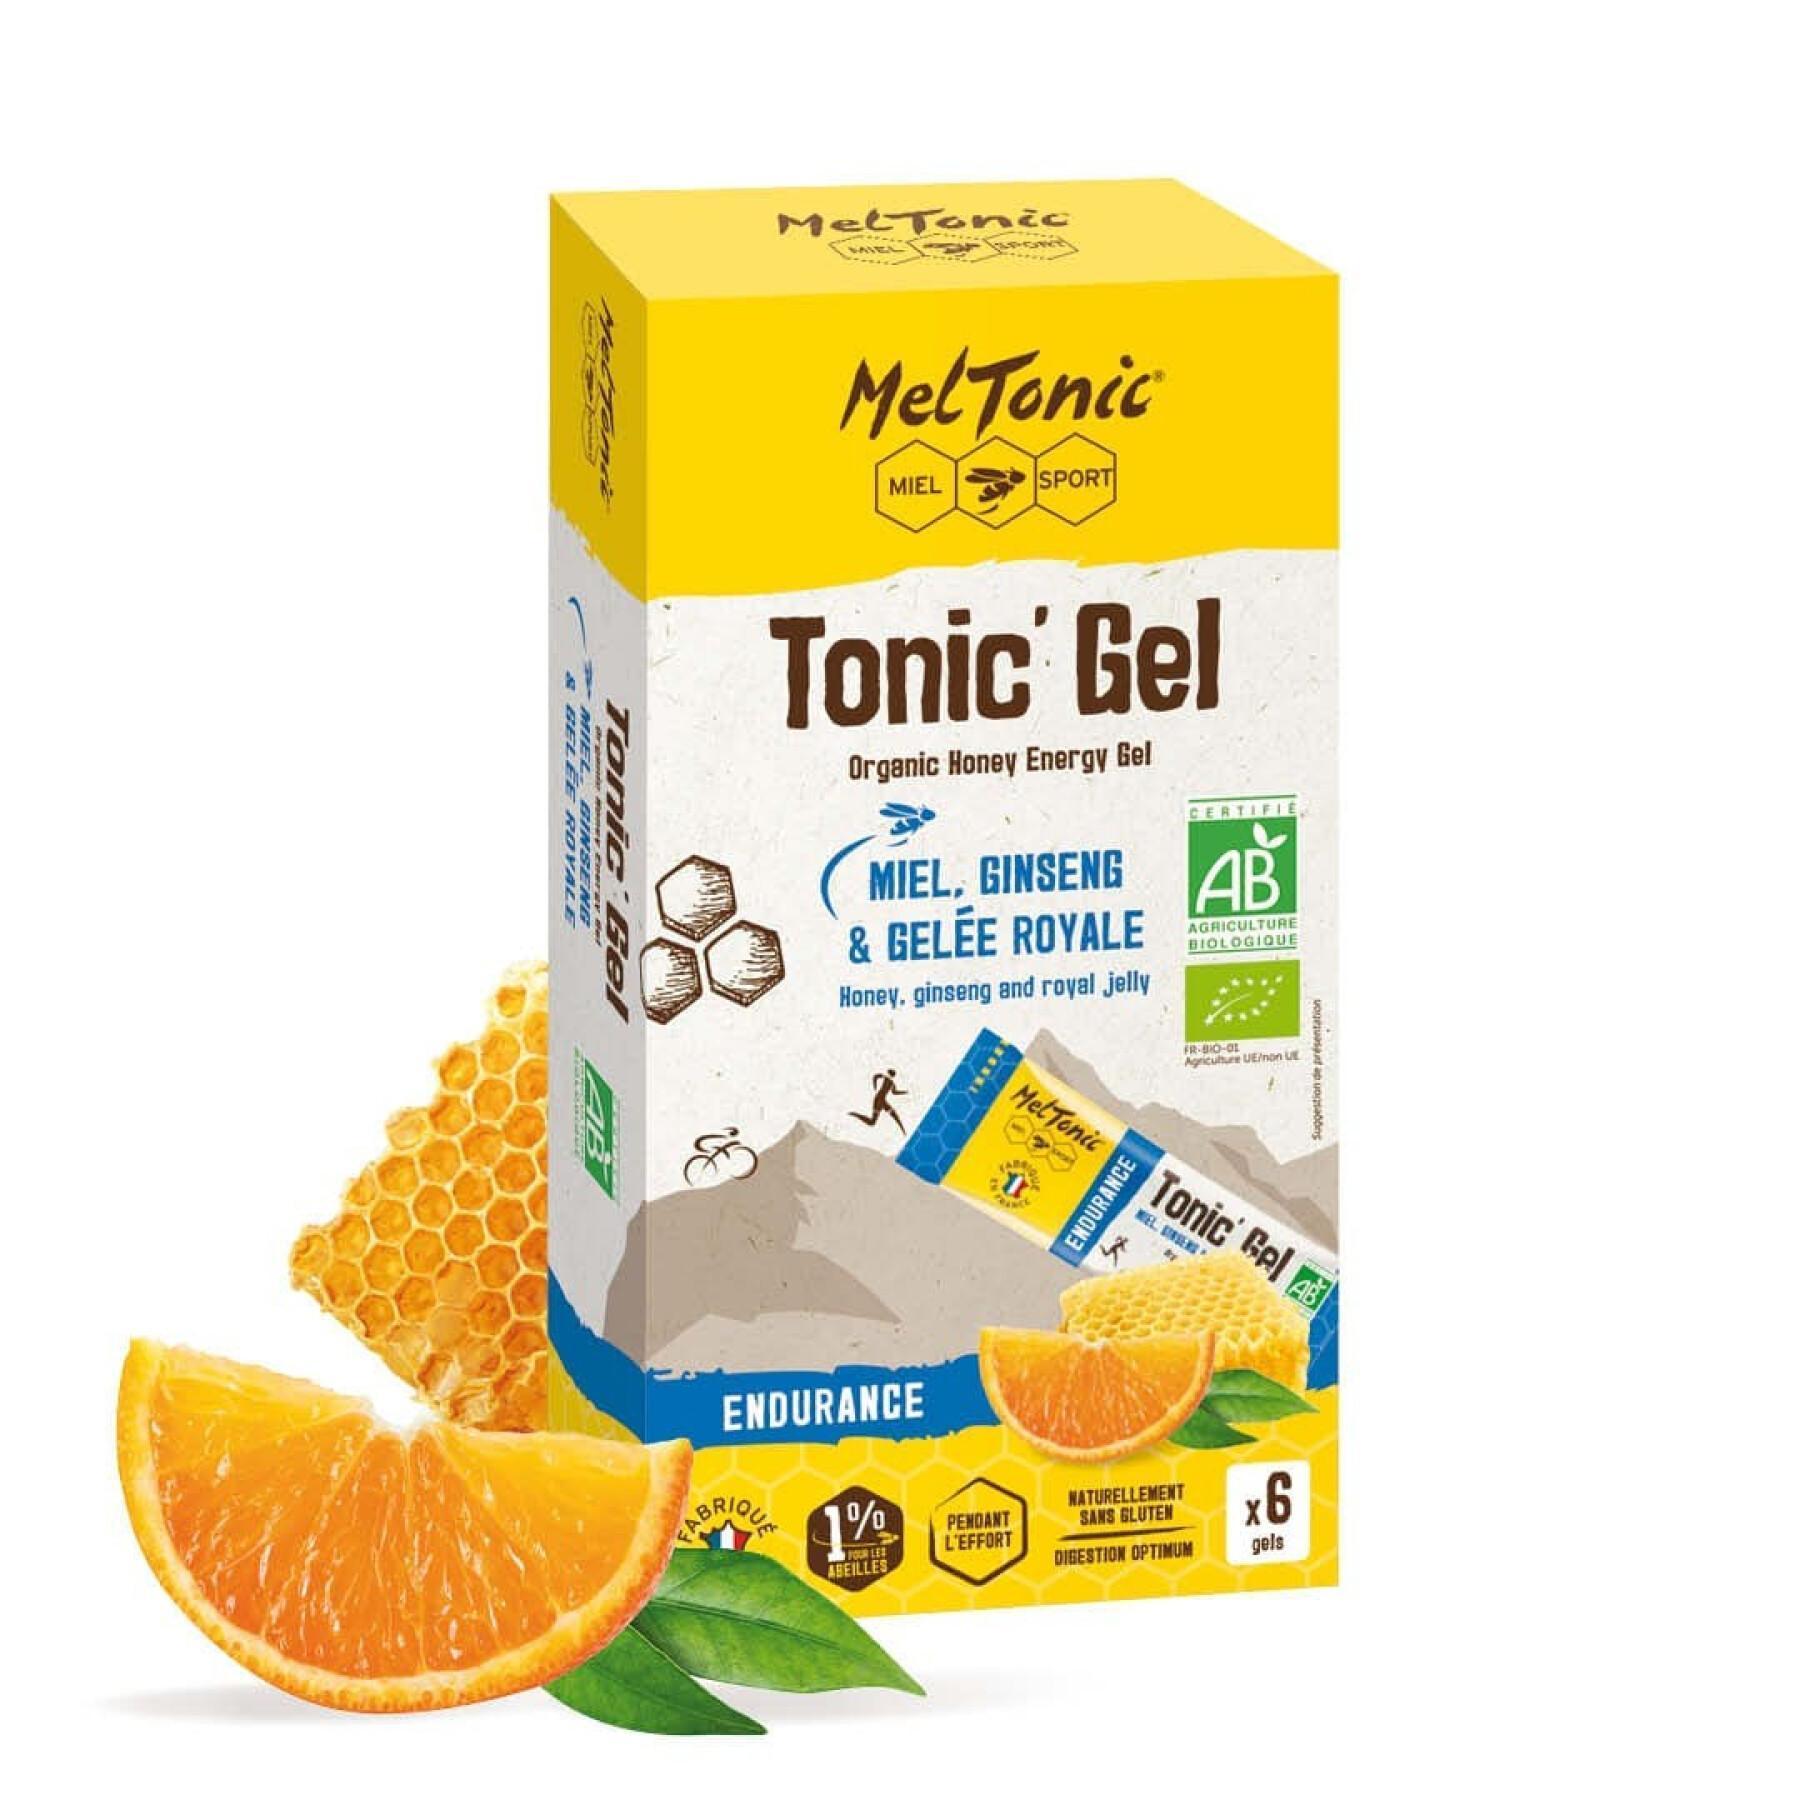 6 Energiegele Meltonic Tonic'bio - Endurance